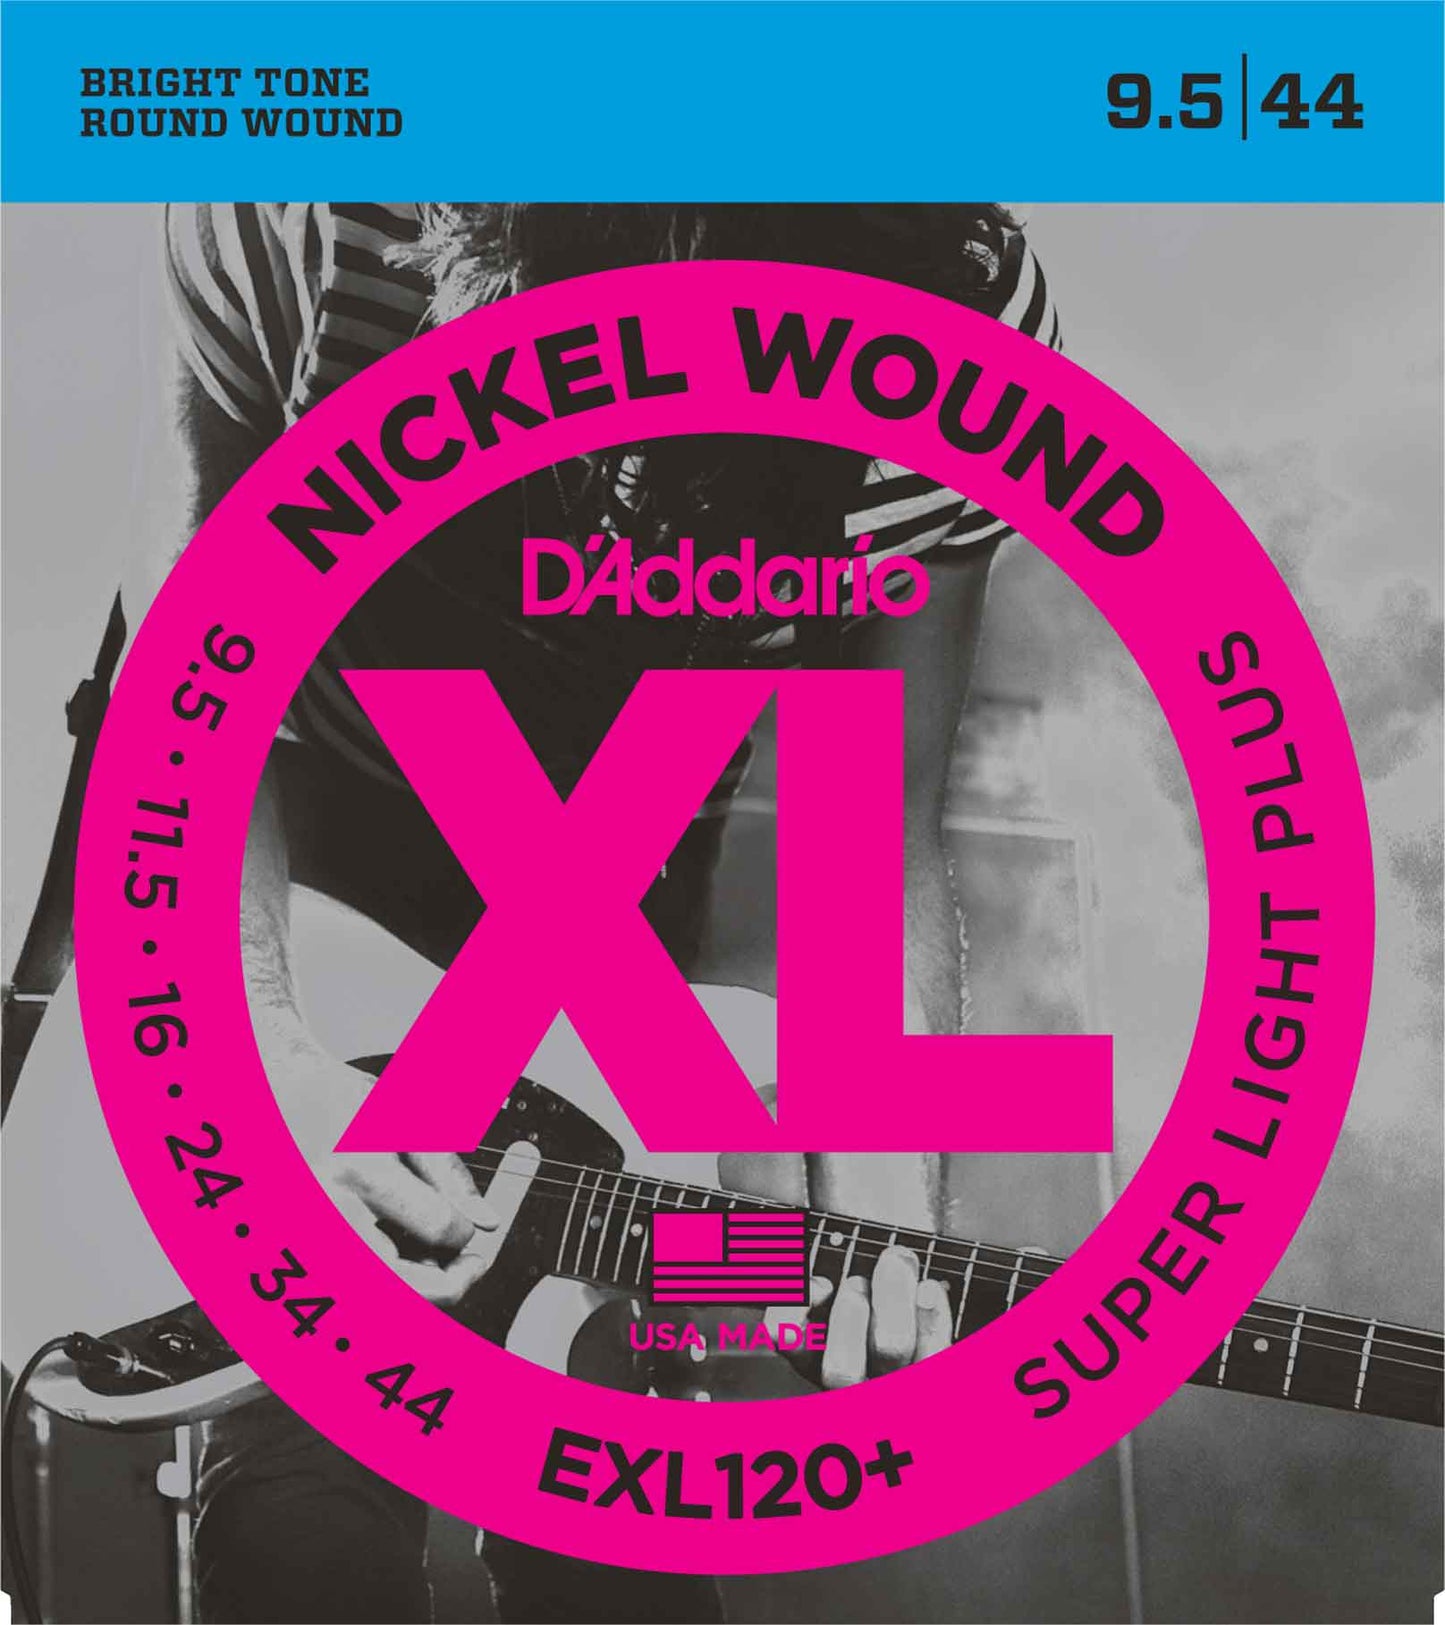 Cordas Nickel Wound D'ADDARIO EXL120+